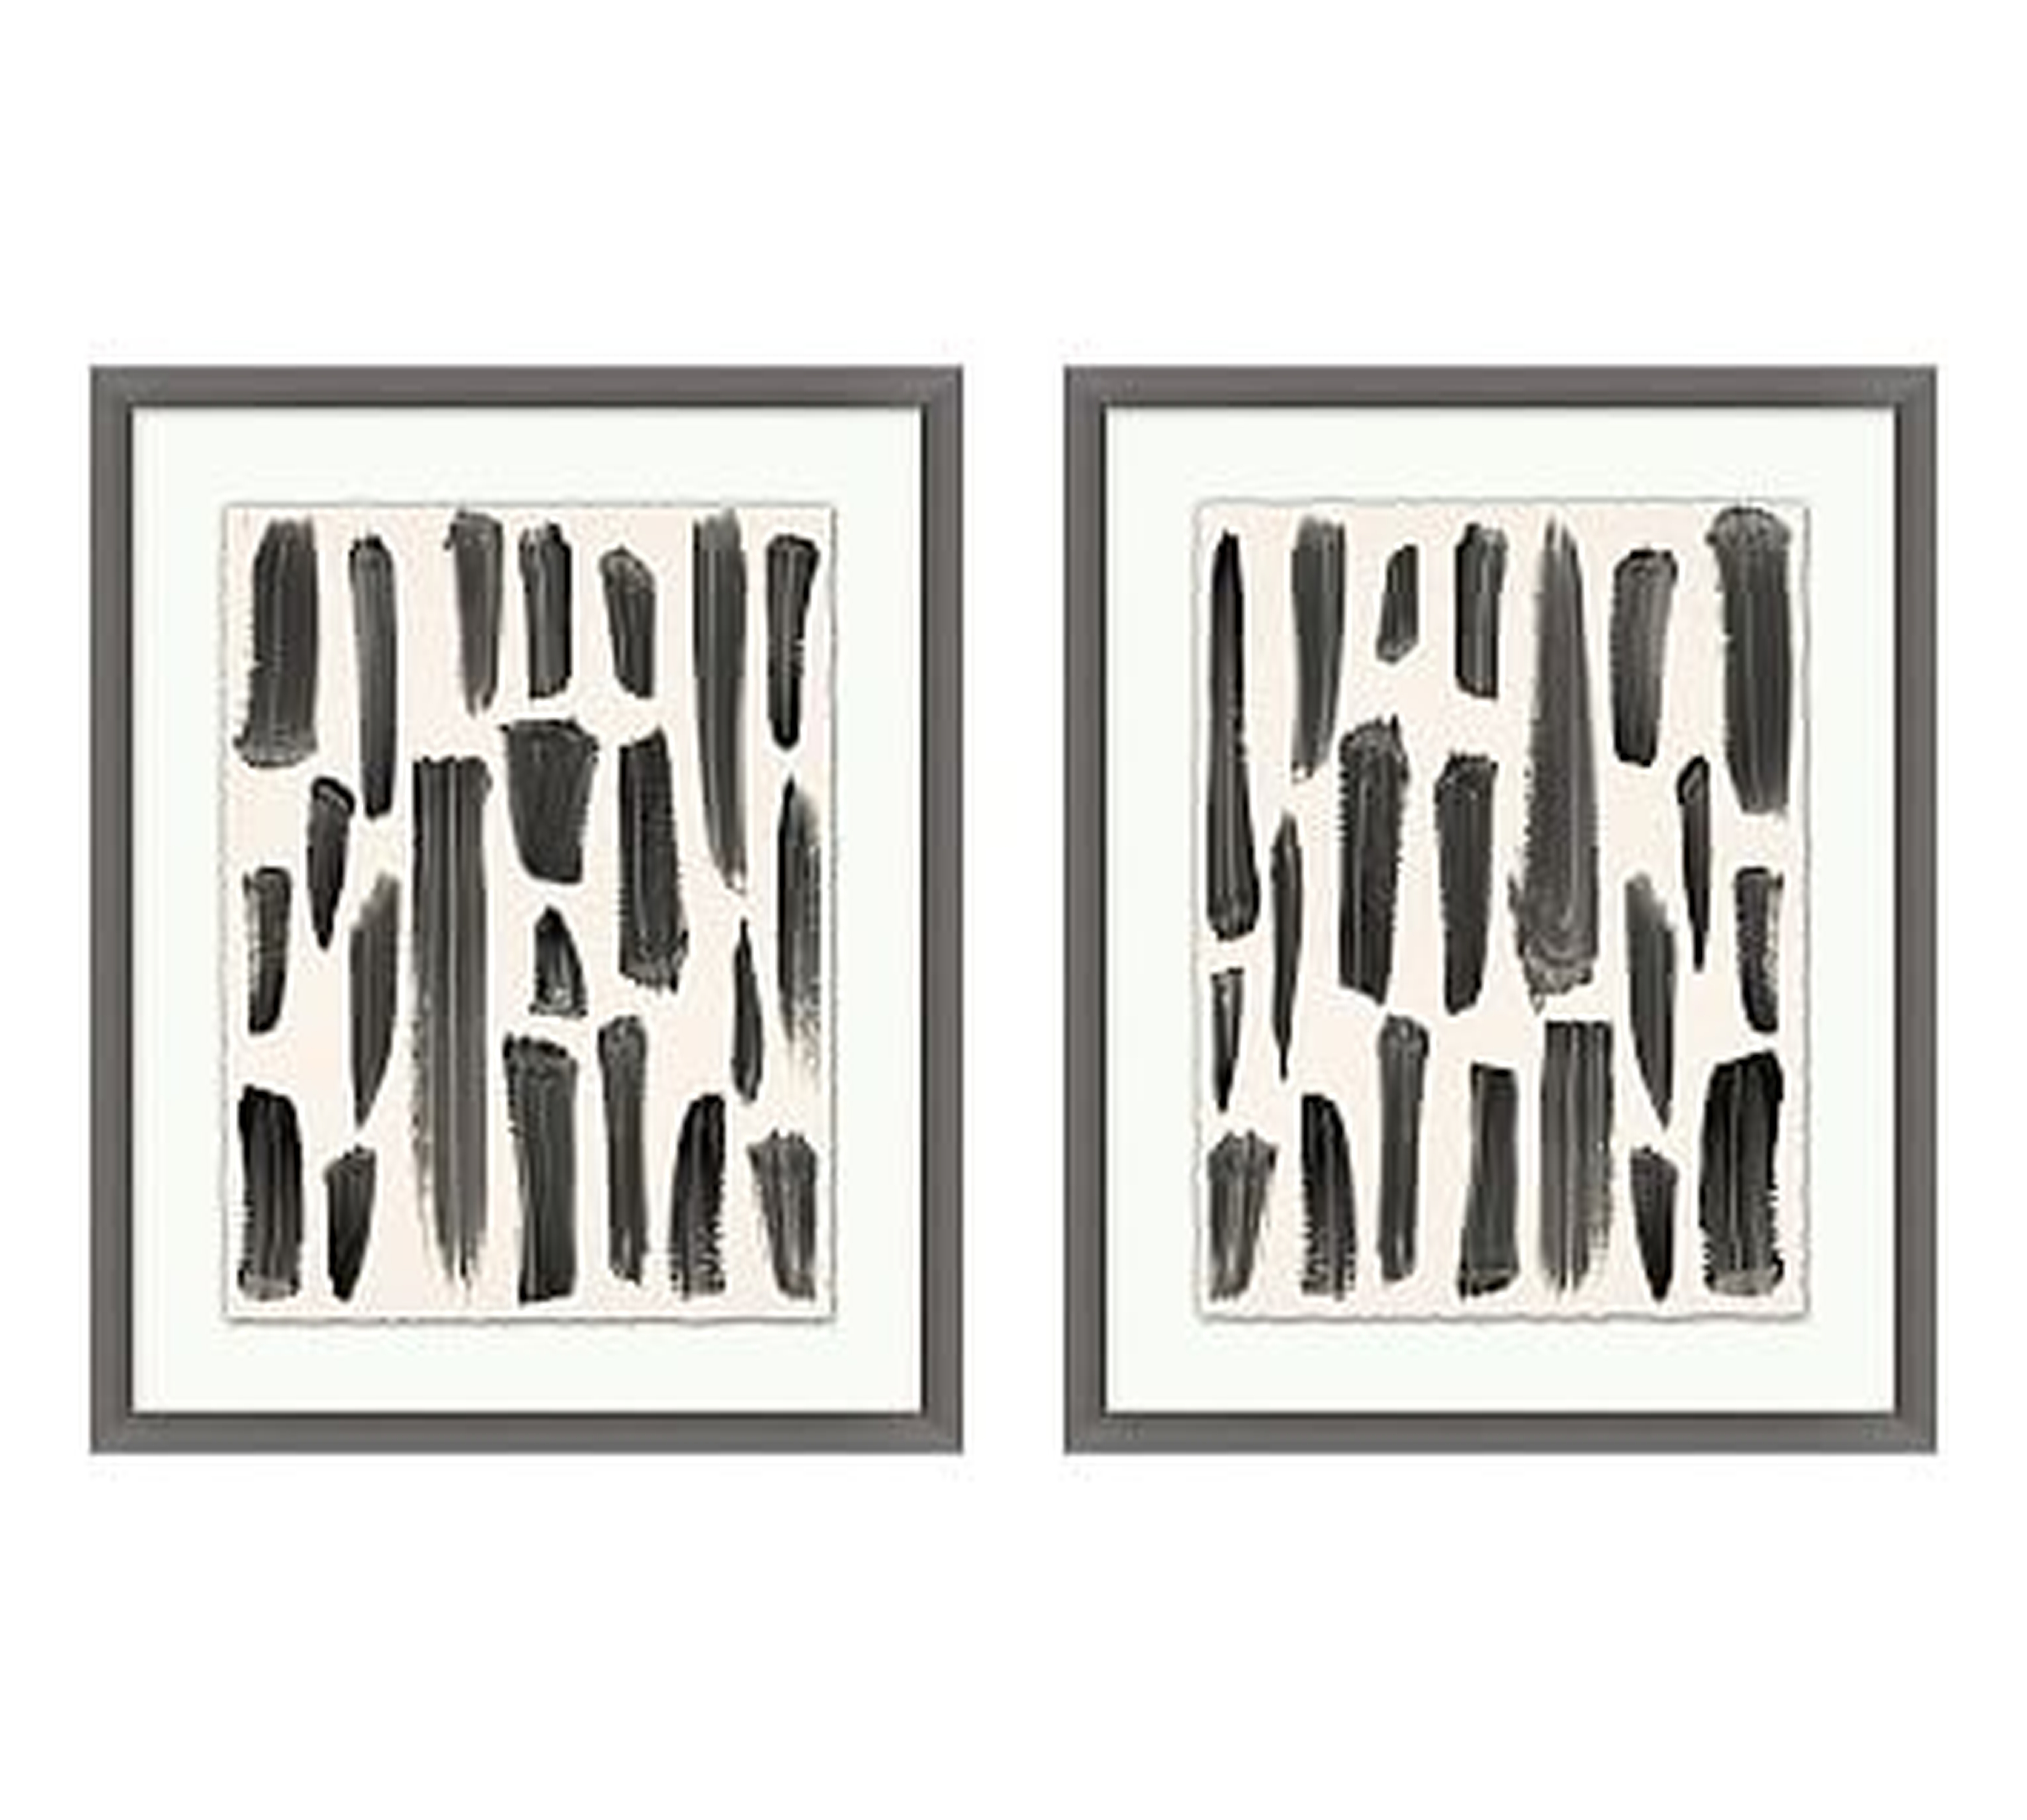 Brush Trails Framed Print, 19.75 x 24.75", Set of 2 - Pottery Barn